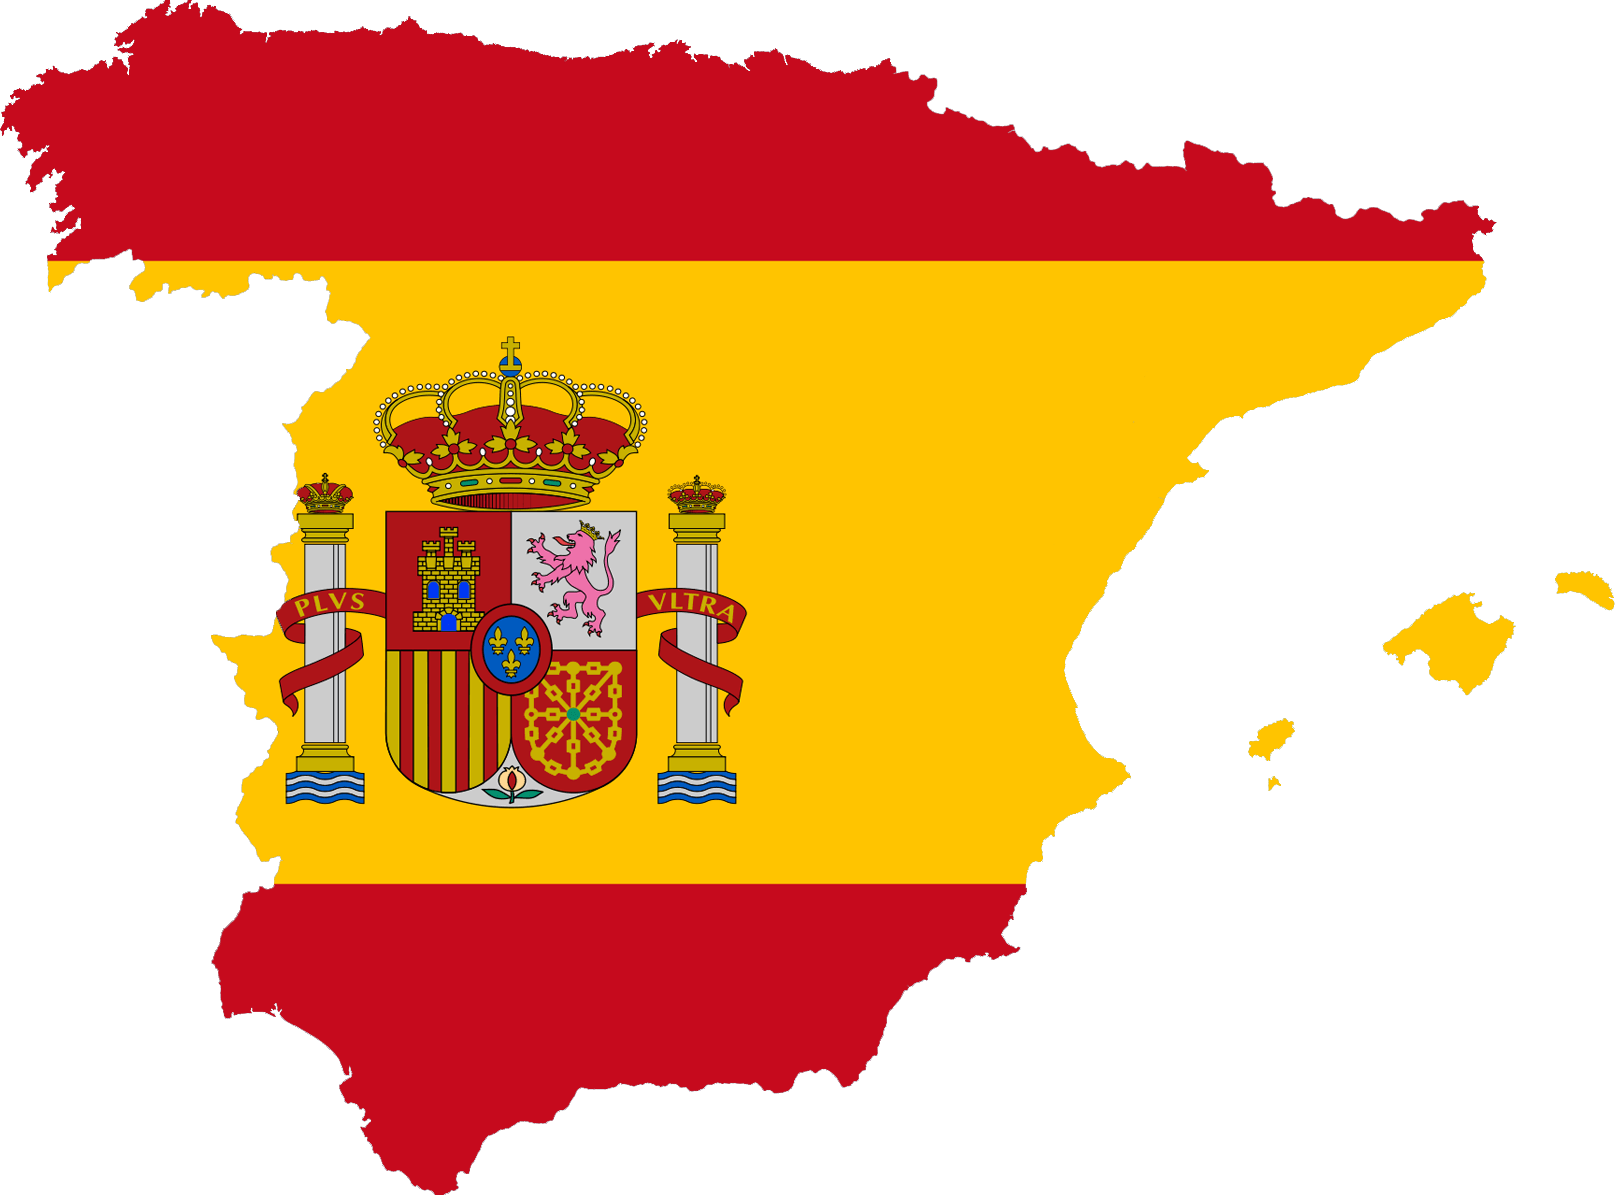 Du học Tây Ban Nha cấp 3 gồm có những chương trình nào?